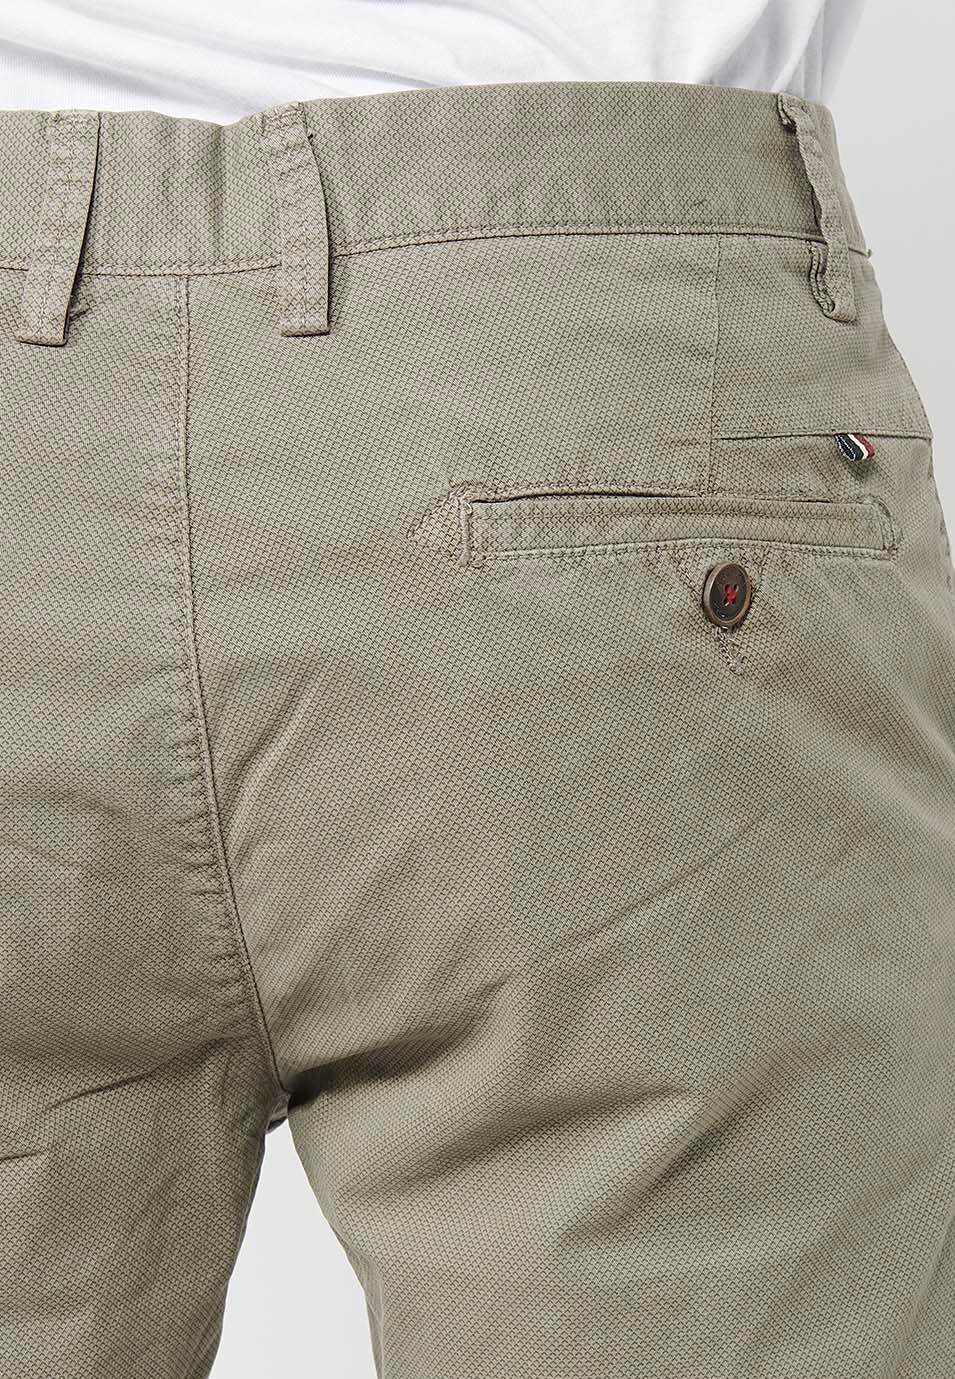 Herren-Bermuda-Chino-Shorts mit Umschlag, Reißverschluss vorne und Knopfverschluss sowie vier Taschen in Nerzfarbe 7